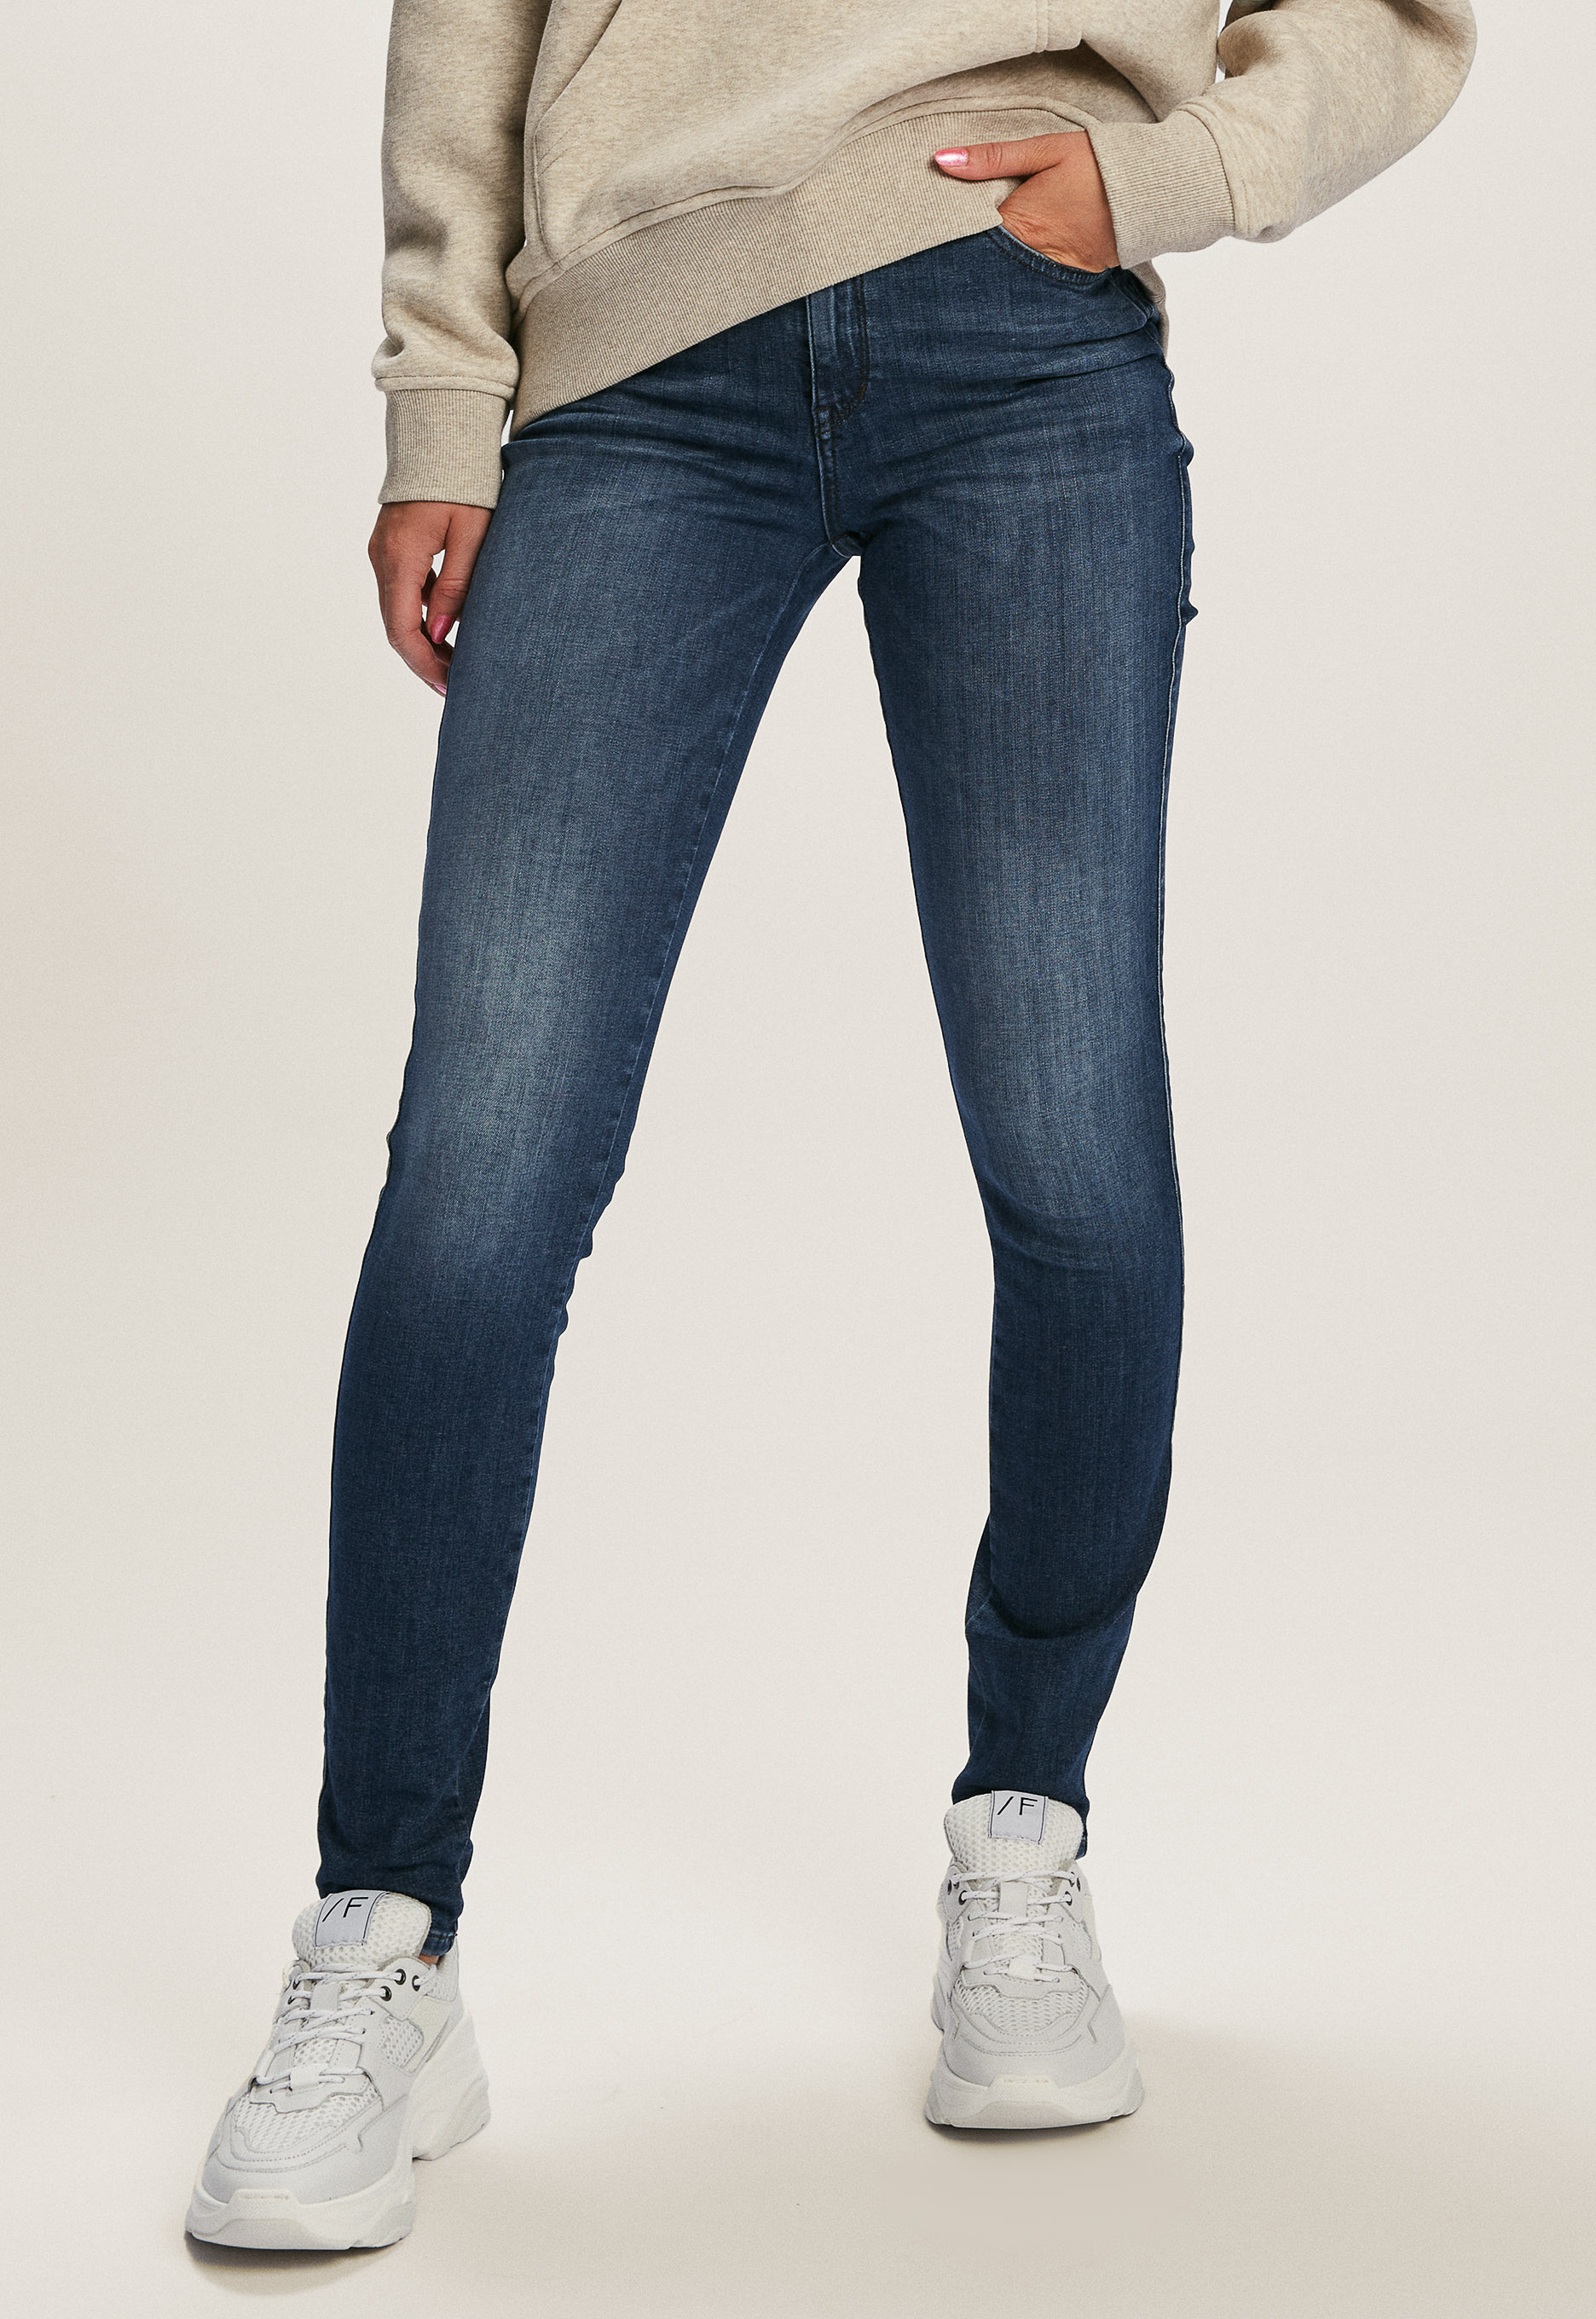 Silvercreek Celsi jeans